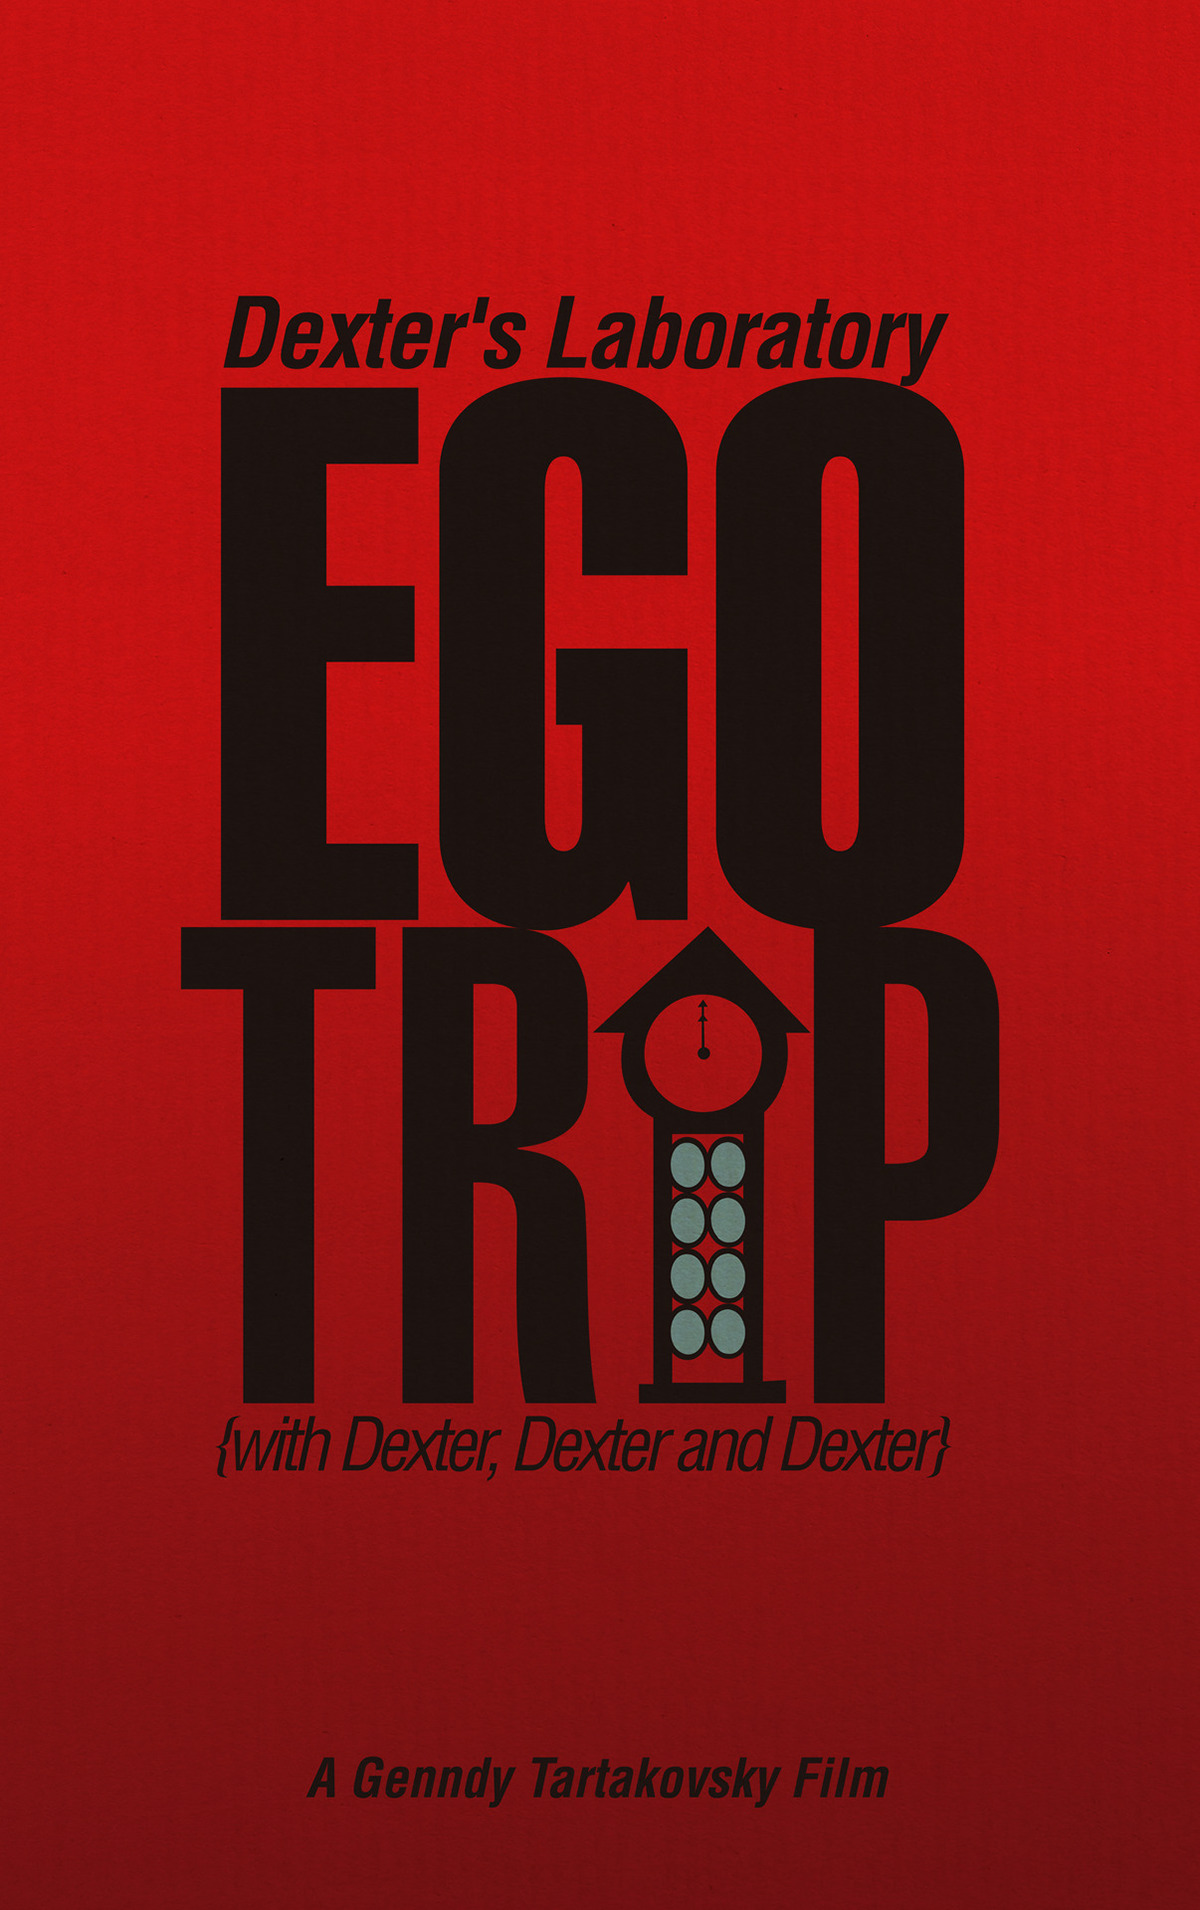 ego trip adalah